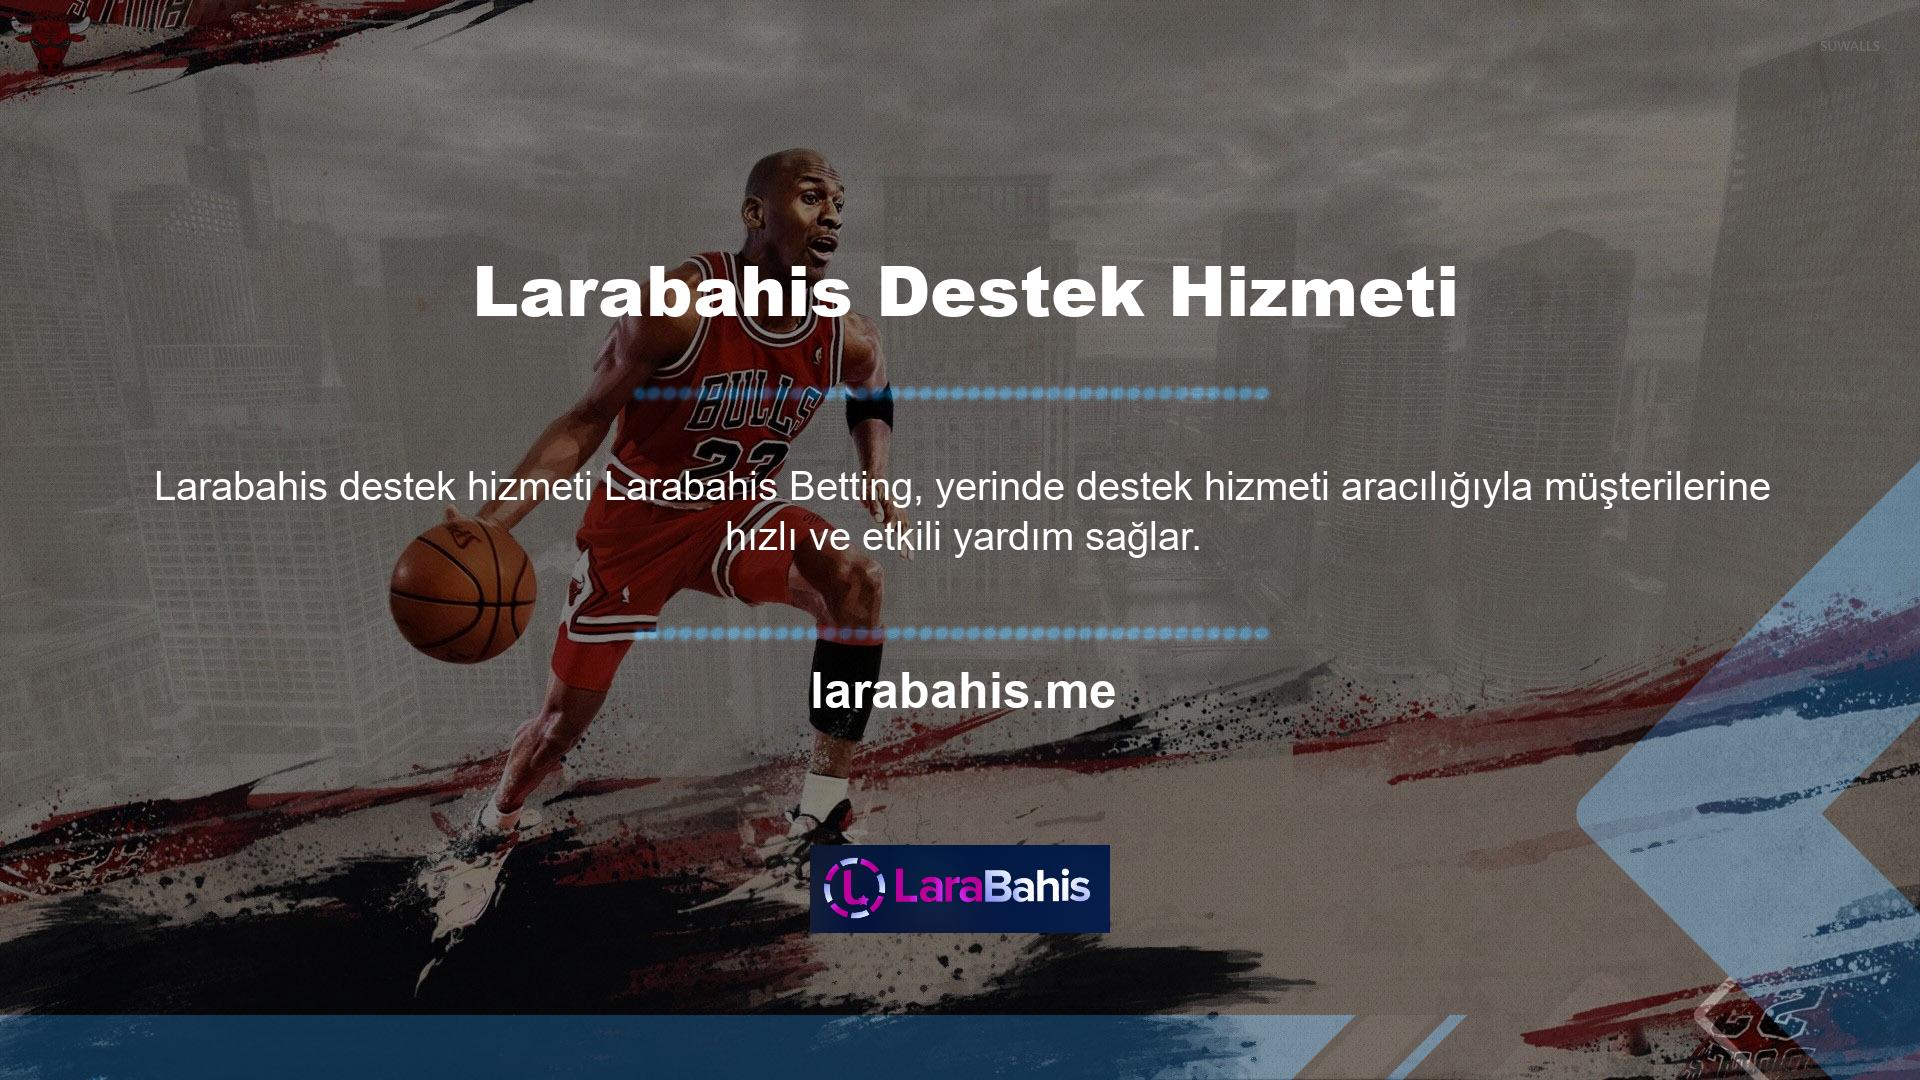 Larabahis Bahis Ofisi, web sitesi ve mobil uygulaması aracılığıyla canlı yardım sunarak bu bölümdeki kullanıcı sorularına anında yanıt veriyorLarabahis, bilgili personele ve gerçek zamanlı yardıma sahip benzersiz bir web sitesidir